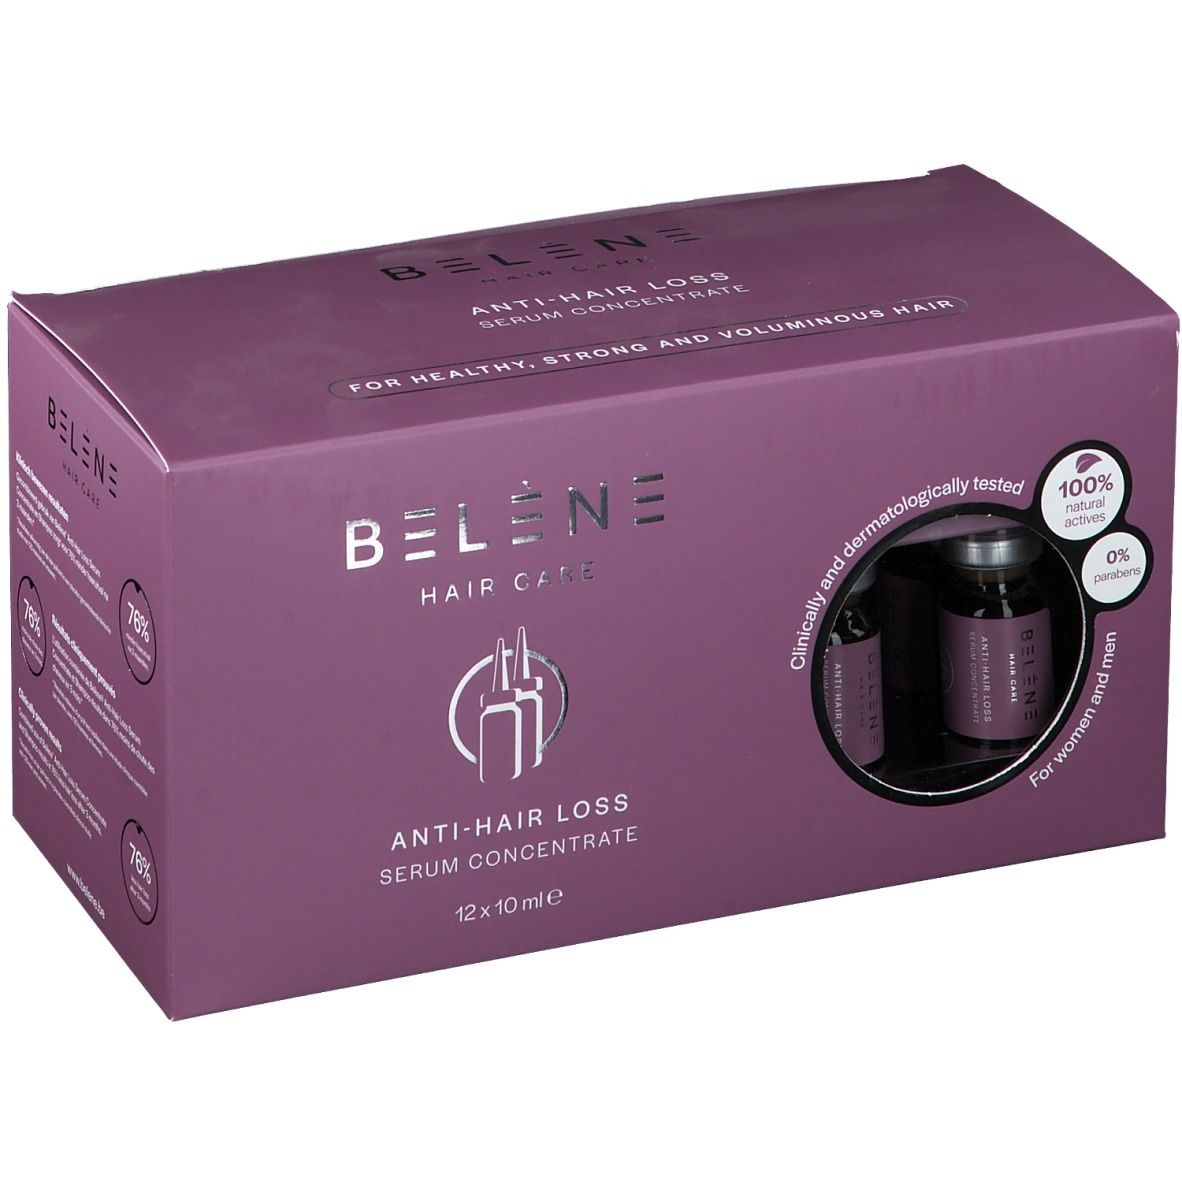 Belène Anti-Hair Loss Serum Concentrate